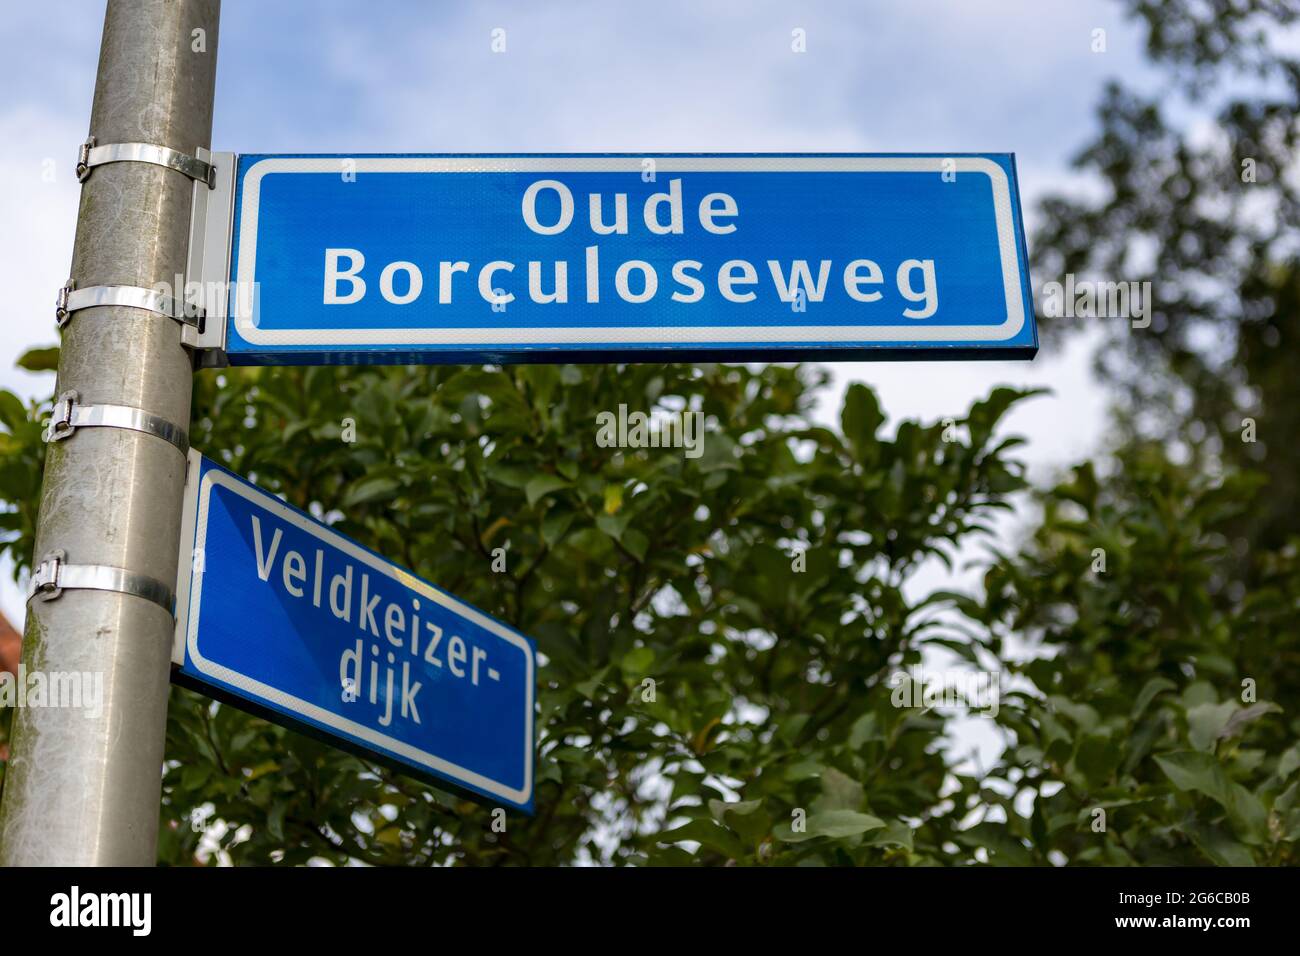 WIERDEN, OLANDA - 10 settembre 2020: Cartello stradale olandese in blu con lettera bianca contro un cielo blu con nuvole e verde sullo sfondo Foto Stock